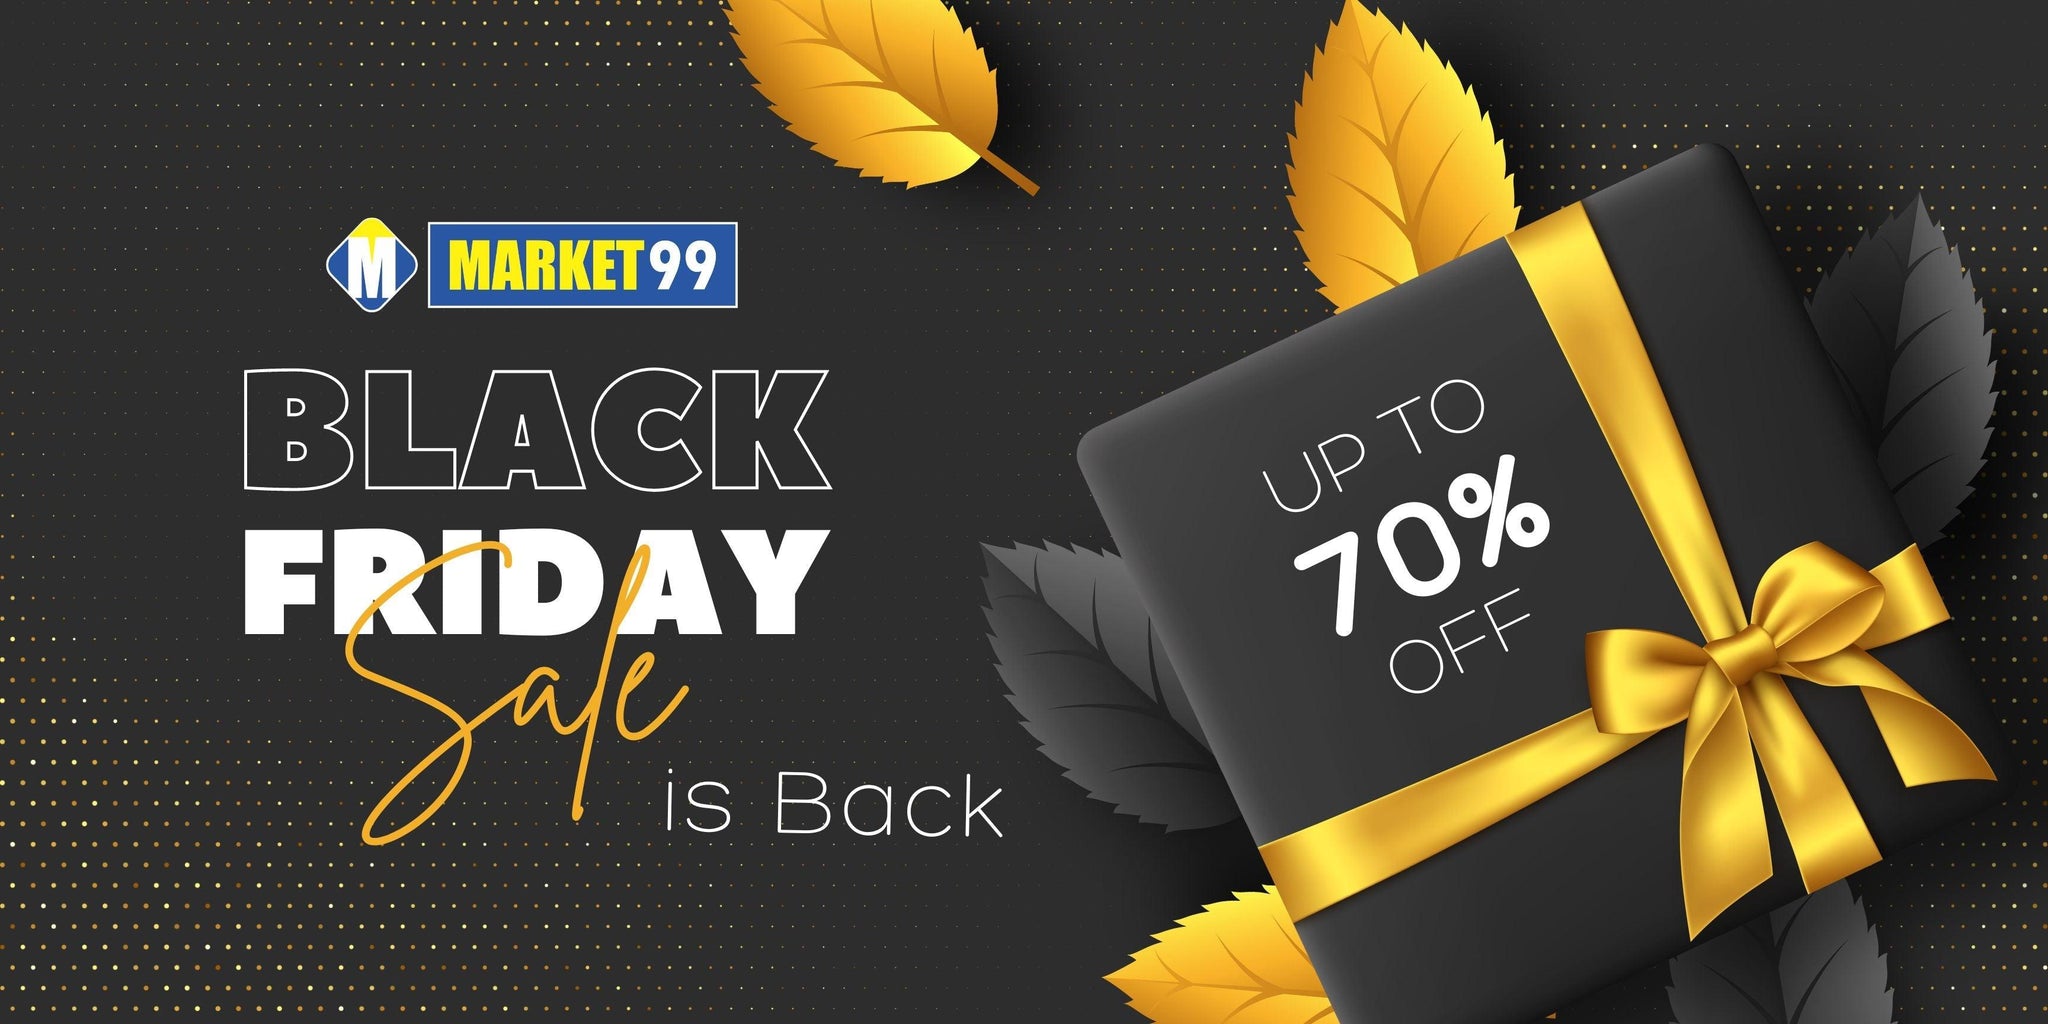 Market99 Black Friday Sale is Back! - MARKET 99